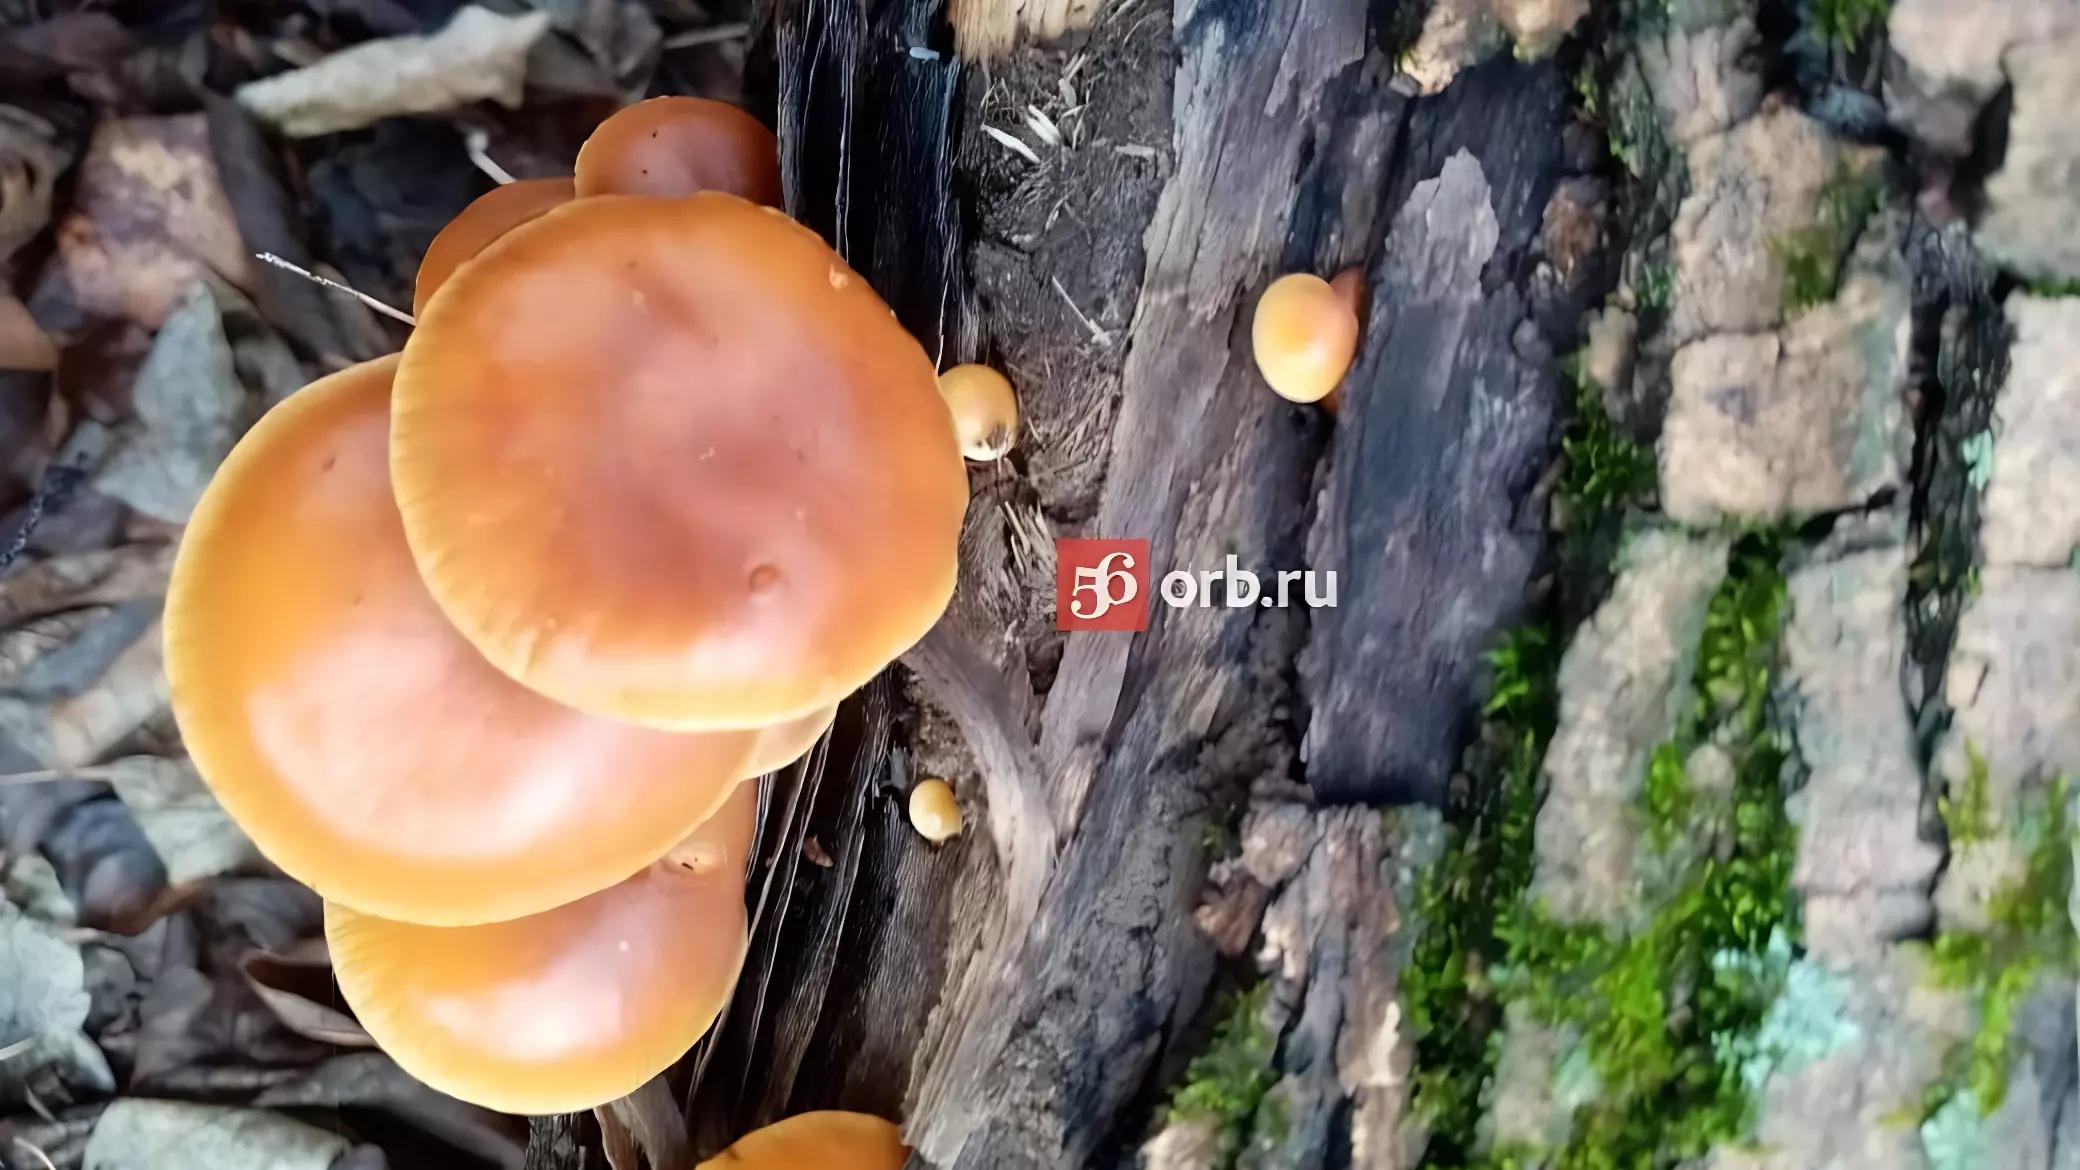 Оренбуржцы собирают в ноябре грибы